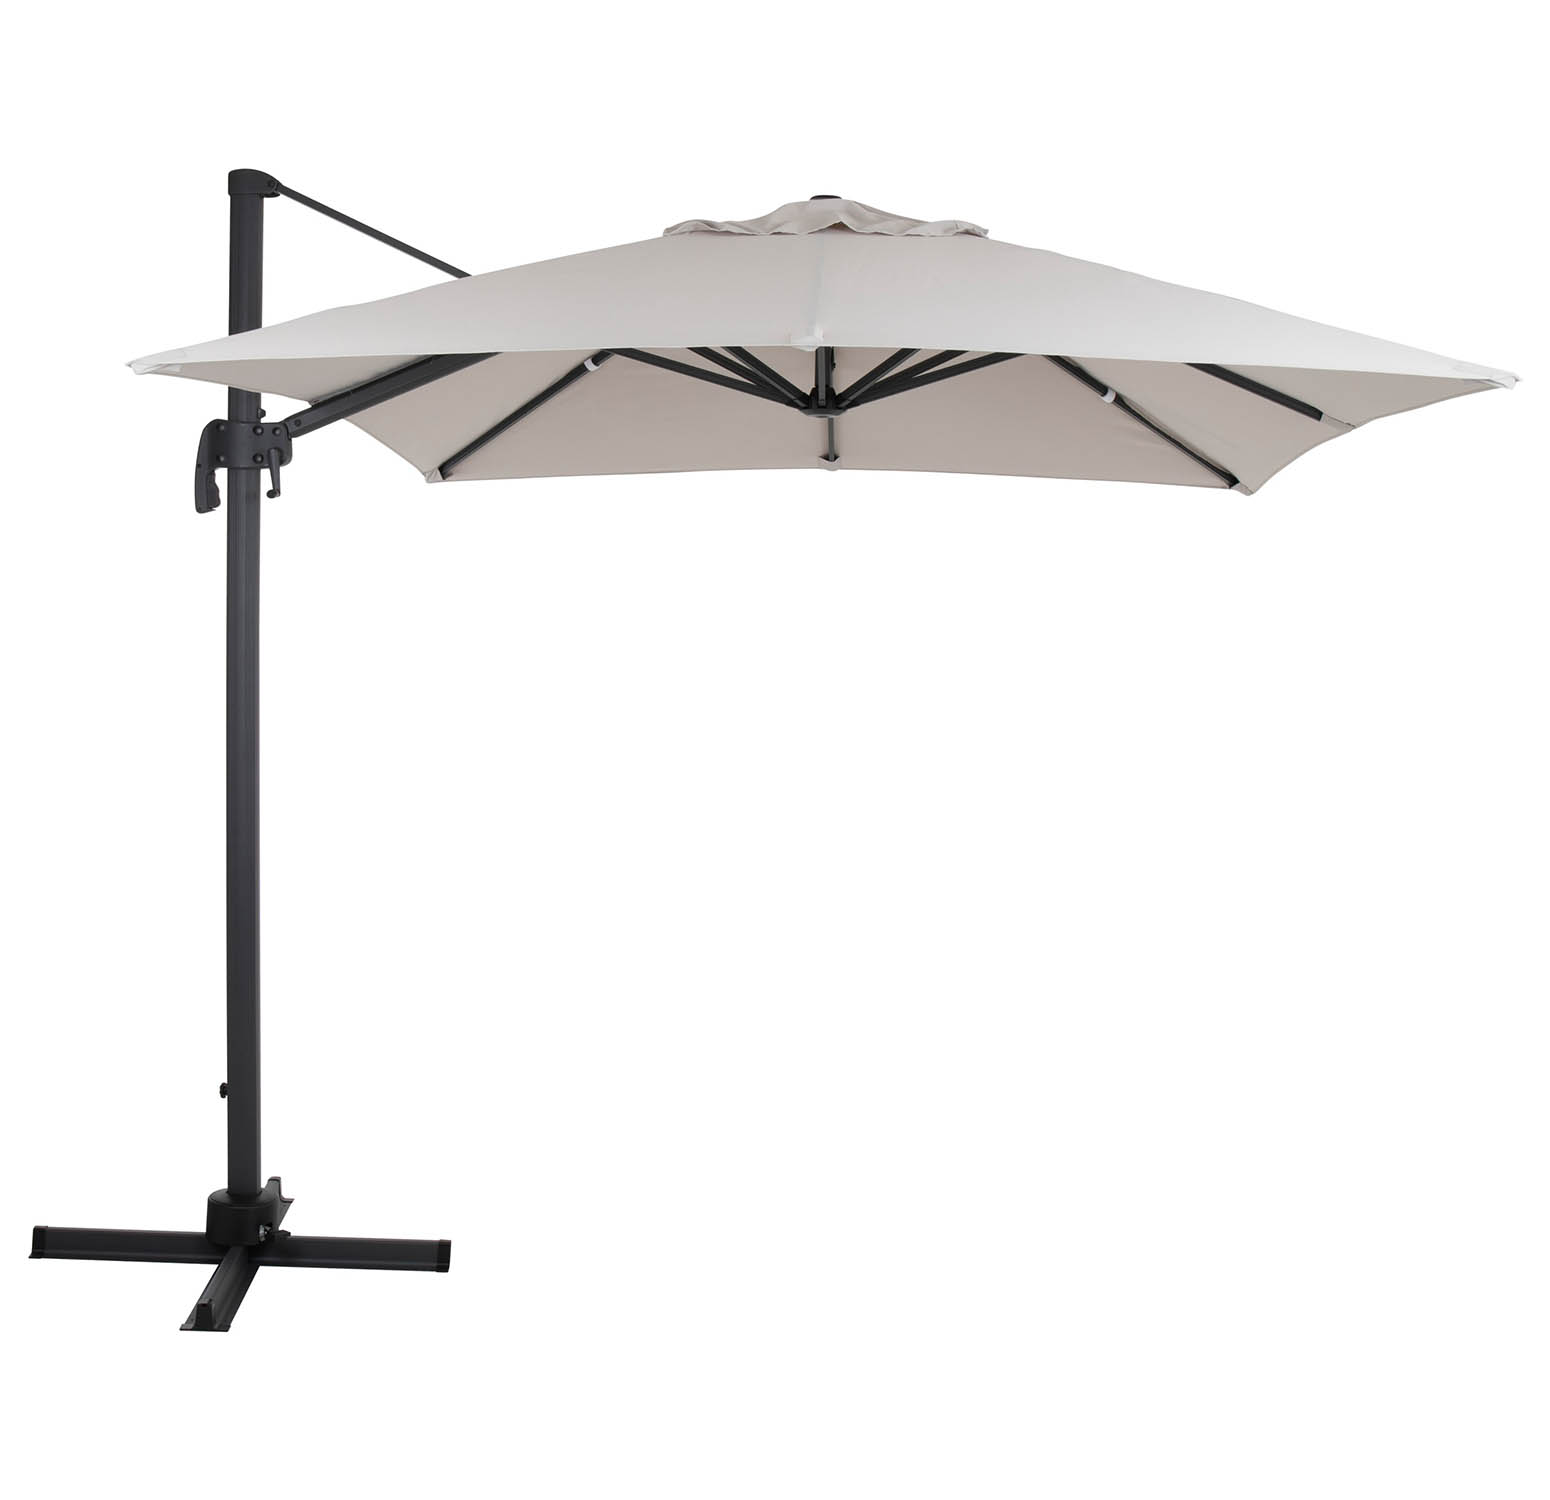 Brafab Linz frihängande parasoll 250x250 cm antracit/ljusbeige